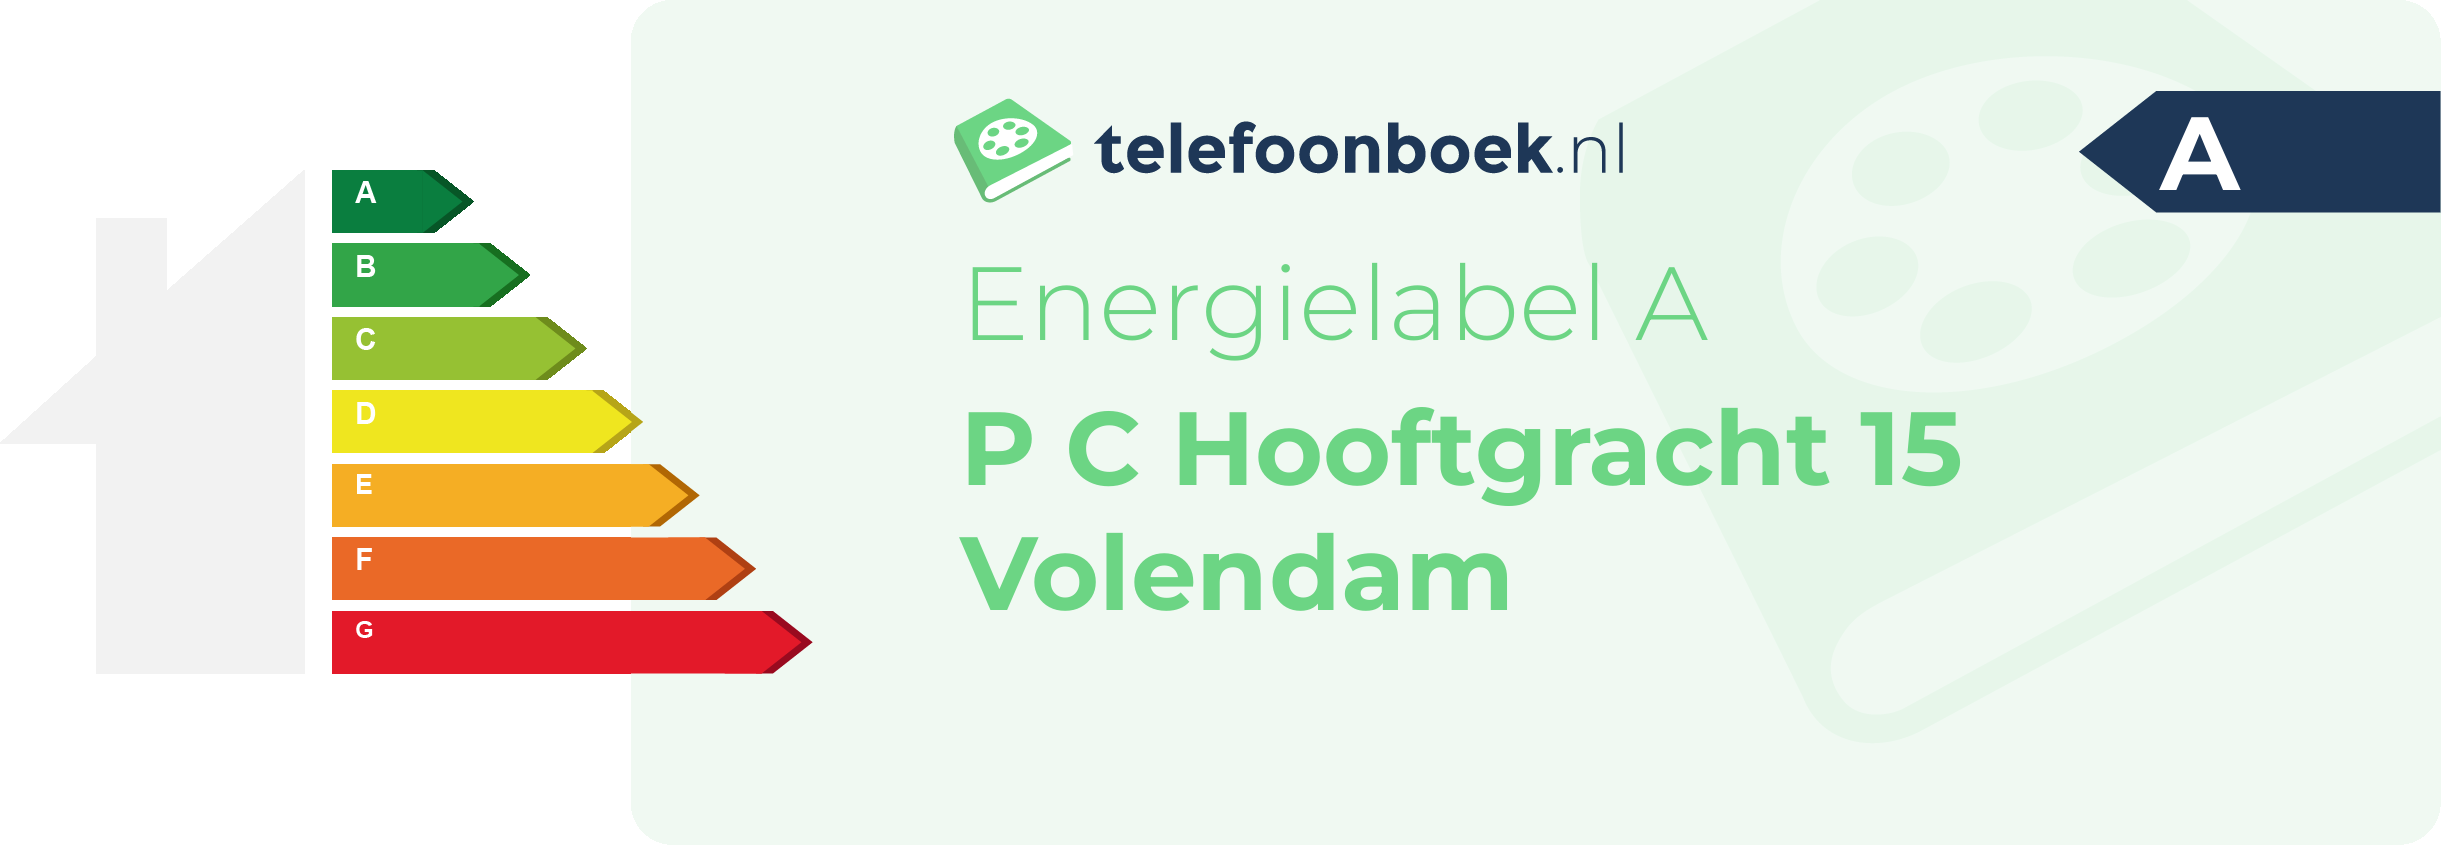 Energielabel P C Hooftgracht 15 Volendam